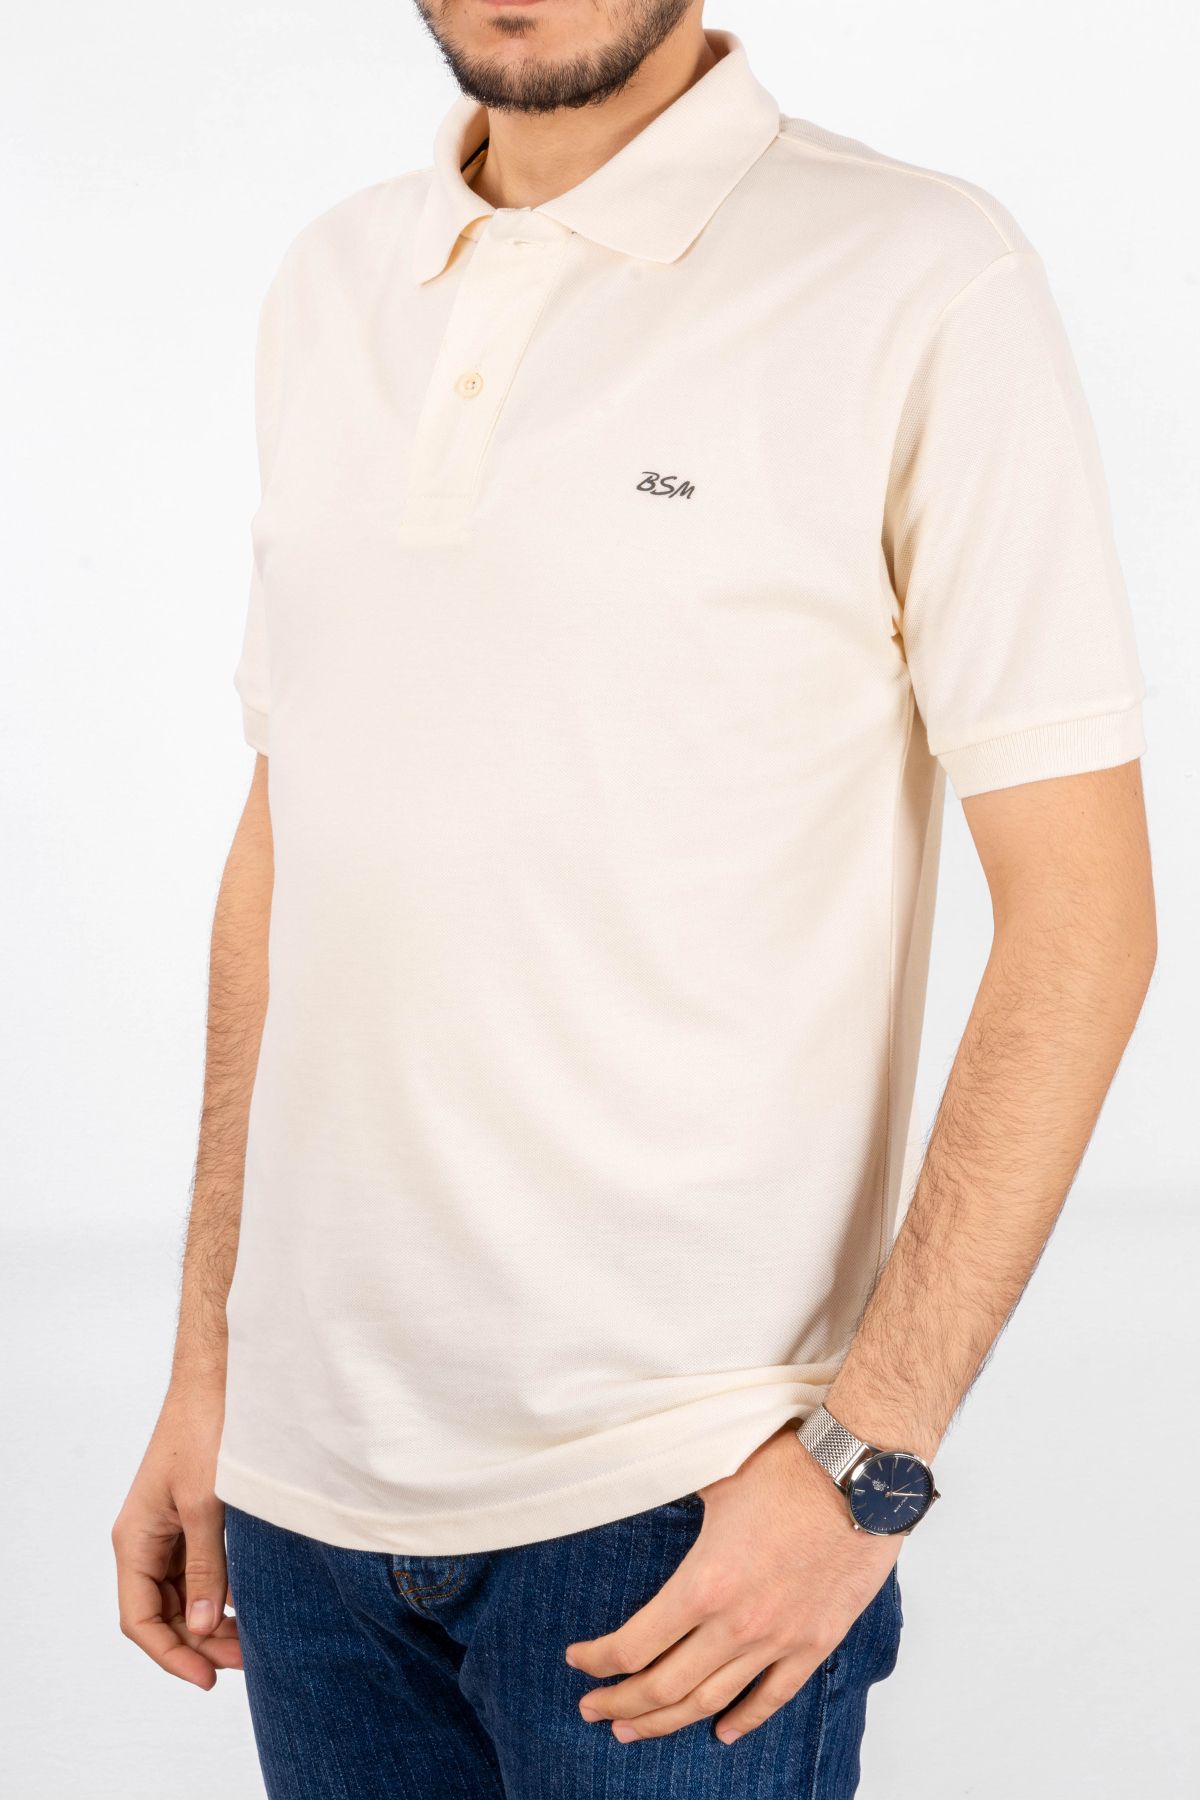 BSM Erkek Yüksek Kalite Kısa Kollu Polo Yaka Ekru Pike T-Shirt